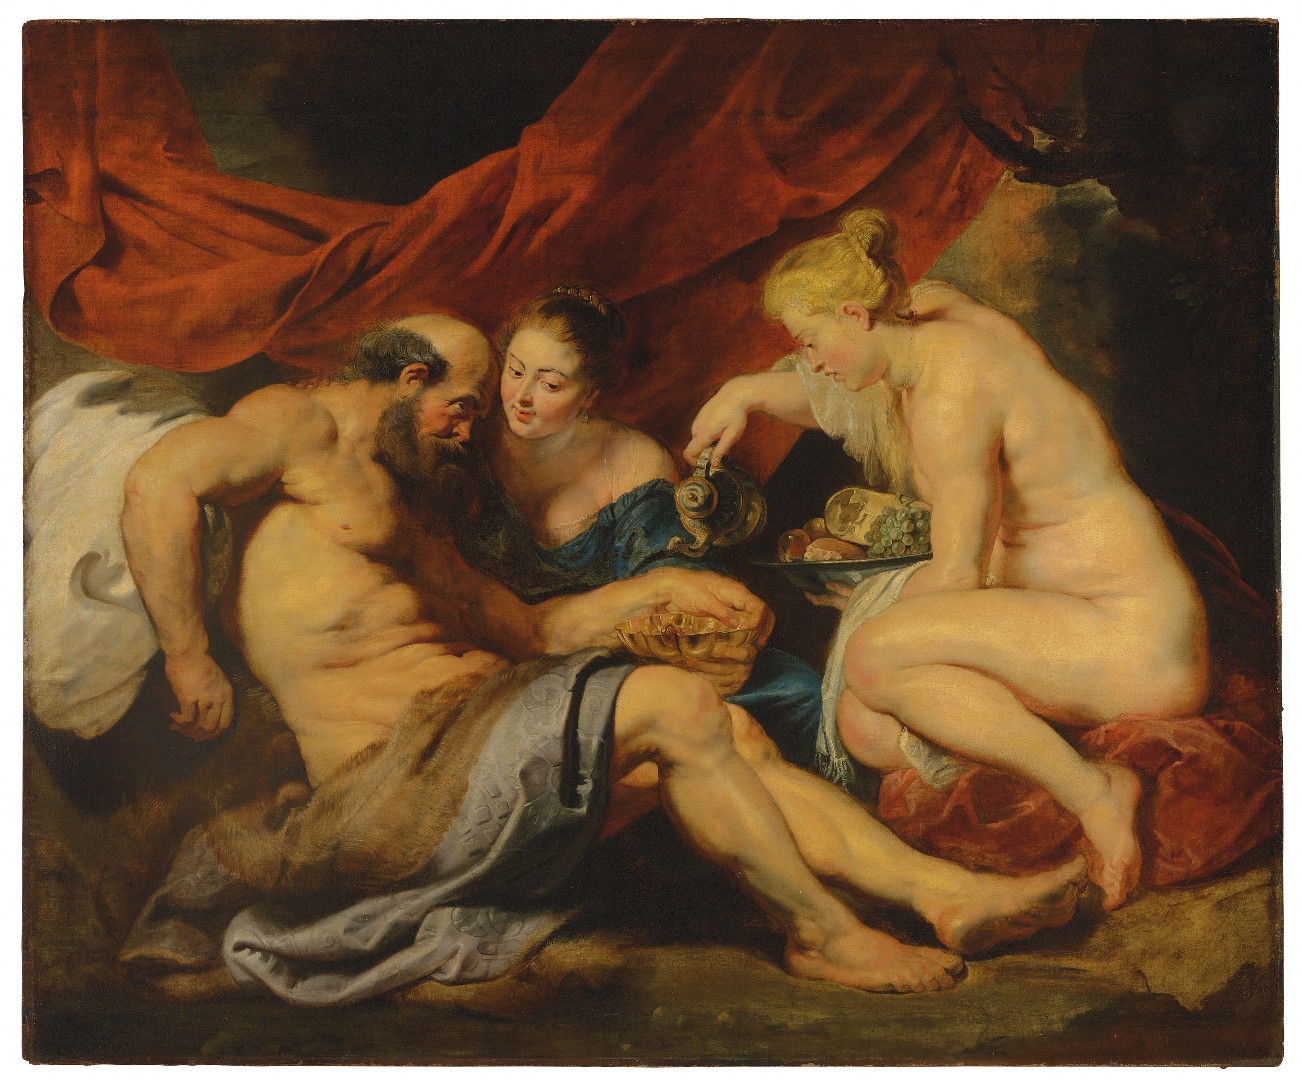 Peter Paul Rubens: Lot a jeho dcery, kolem 1614 olej na plátně, 190 x 225 cm cena: 44 882 500 GBP (58 077 955 USD) Christie's Londýn 7. 7. 2016